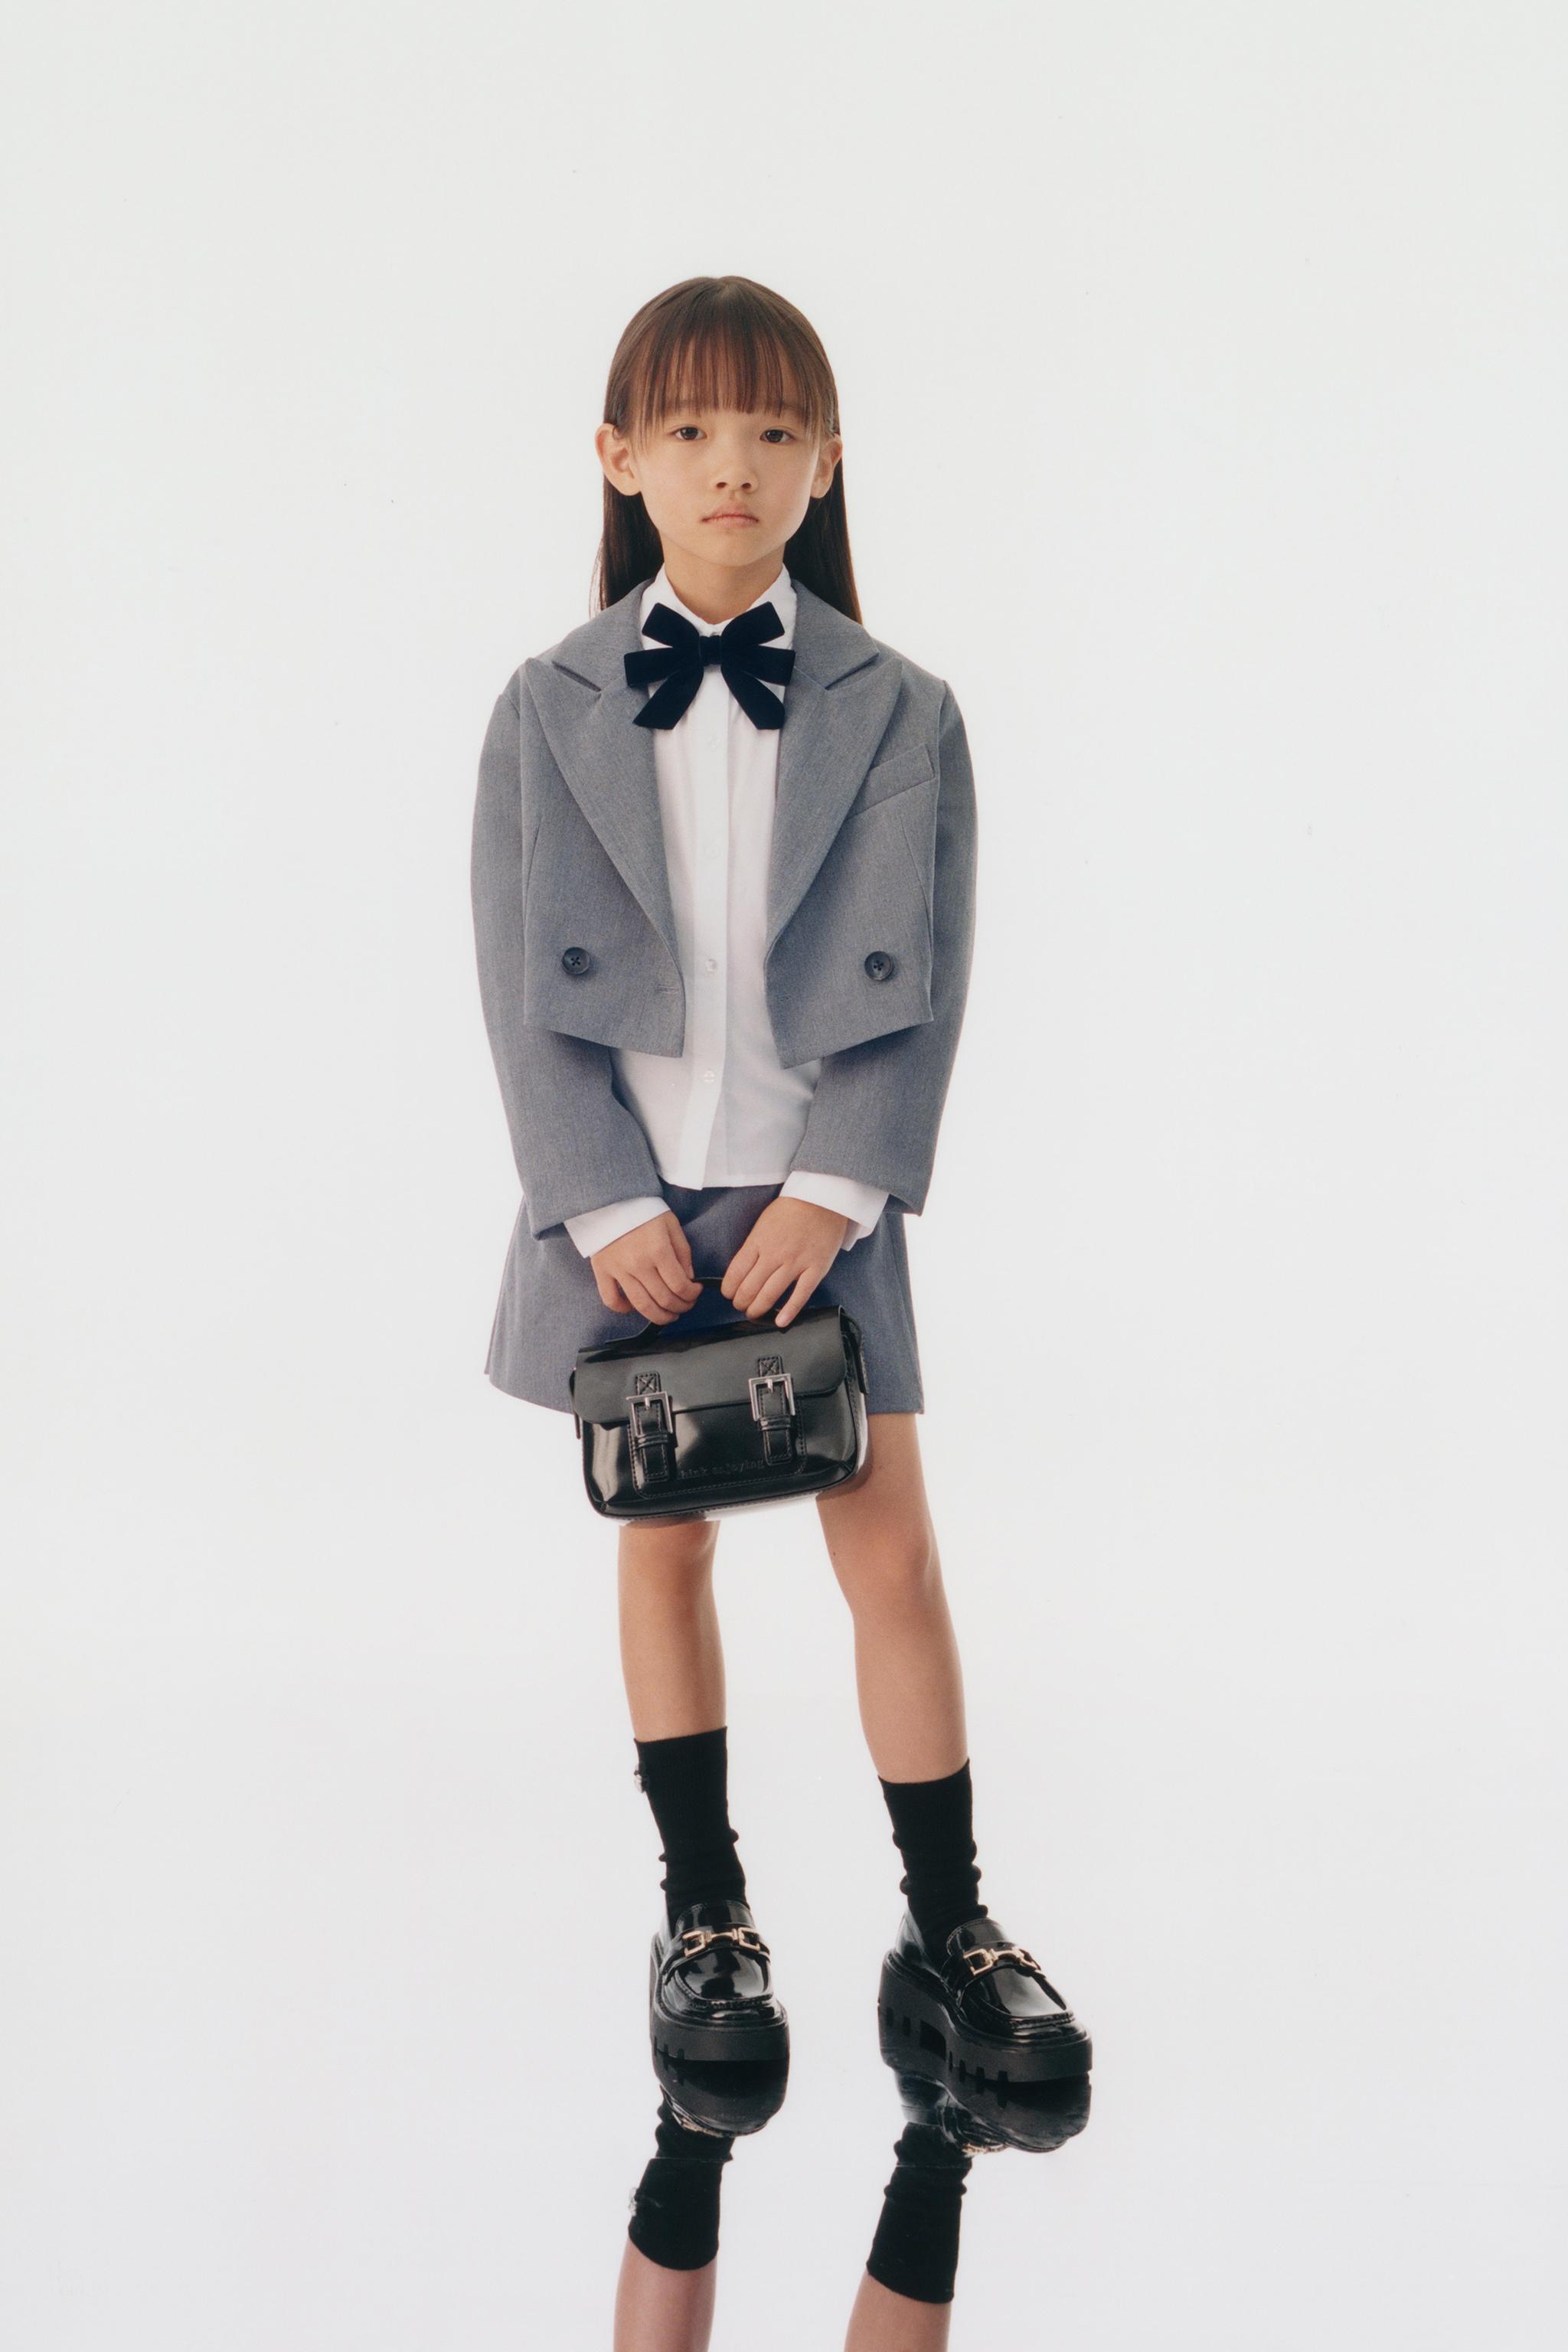 セレモニー・フォーマルウェア | 女の子 (子供服) | 最新コレクション 